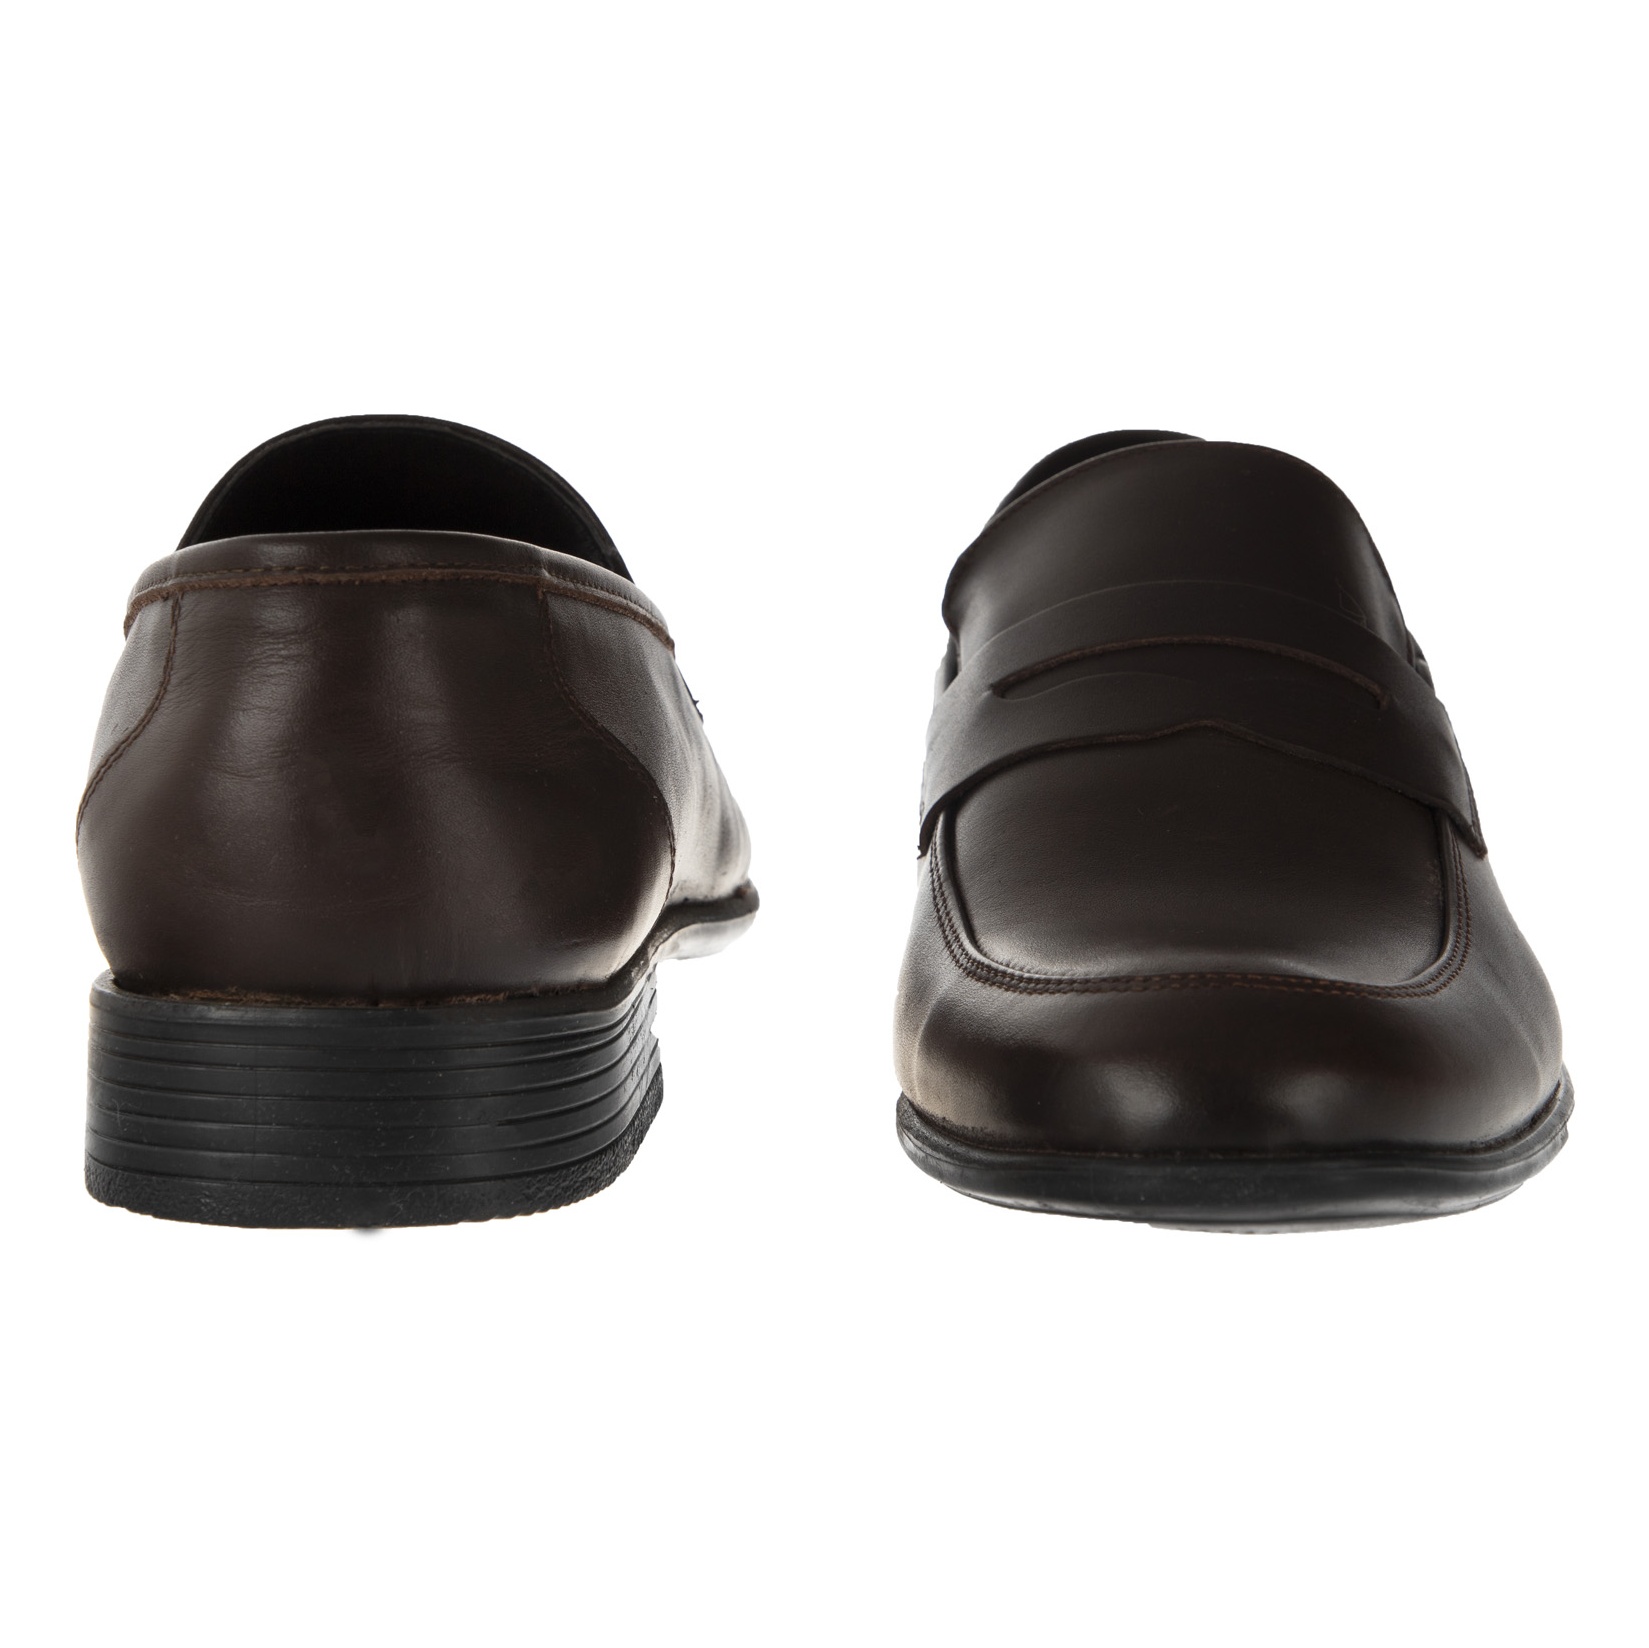 کفش مردانه گاراموند مدل 100255604-103 - قهوه ای - 4